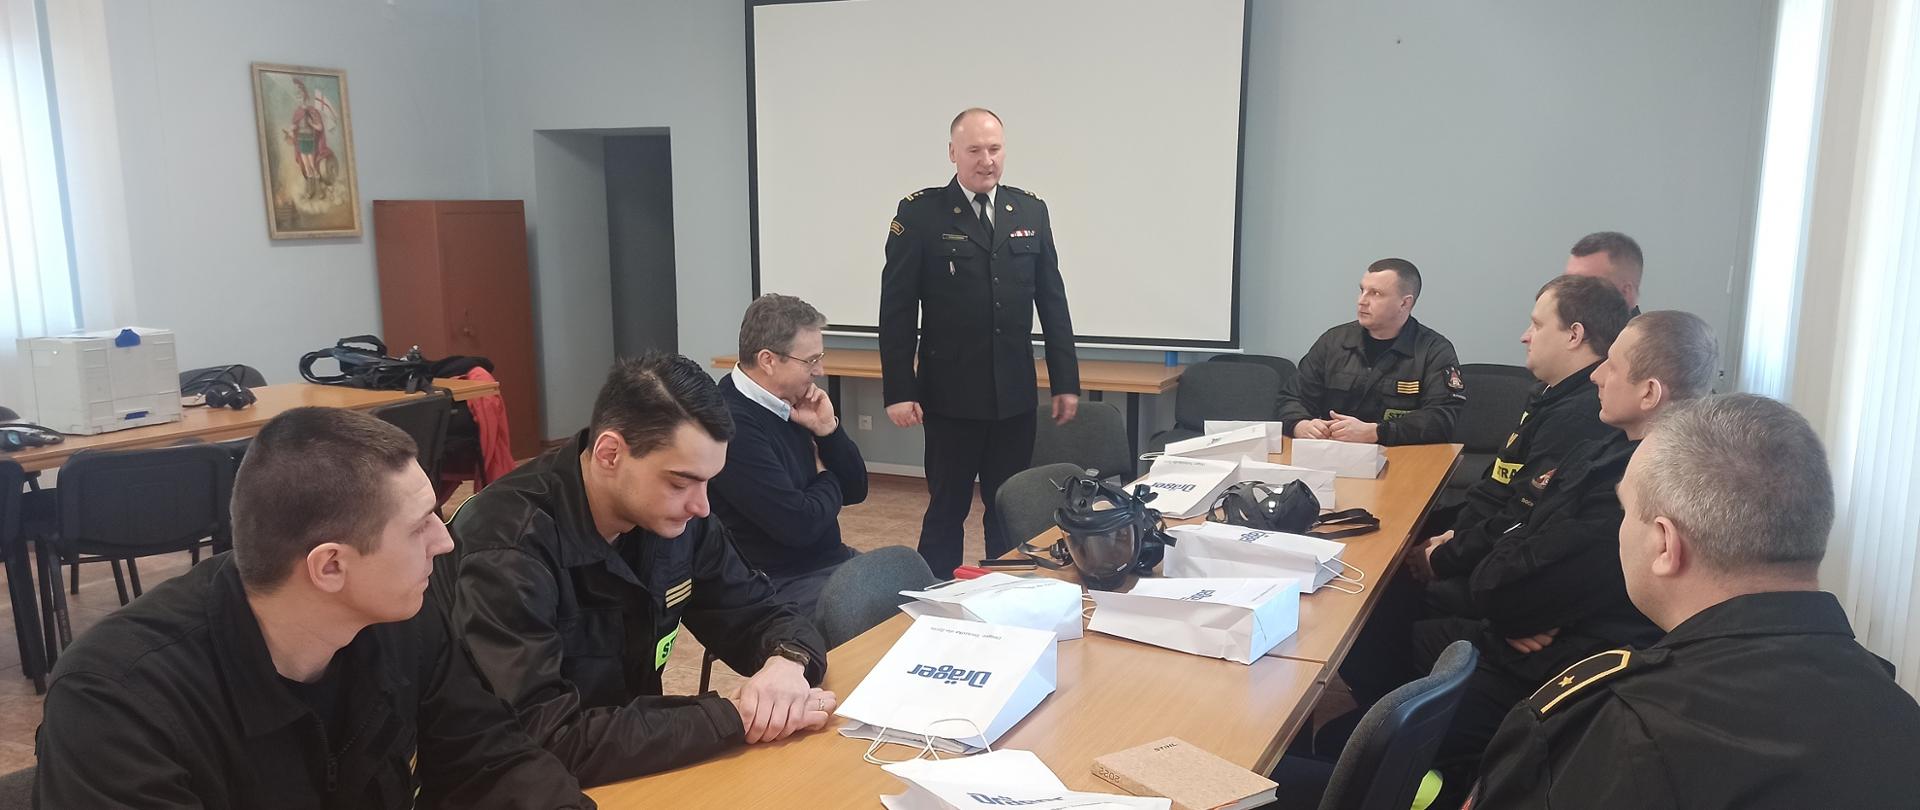 Na zdjęciu uczestnicy szkolenia i przemawiający na jego rozpoczęcie zastępca Komendanta PSP w Płocku